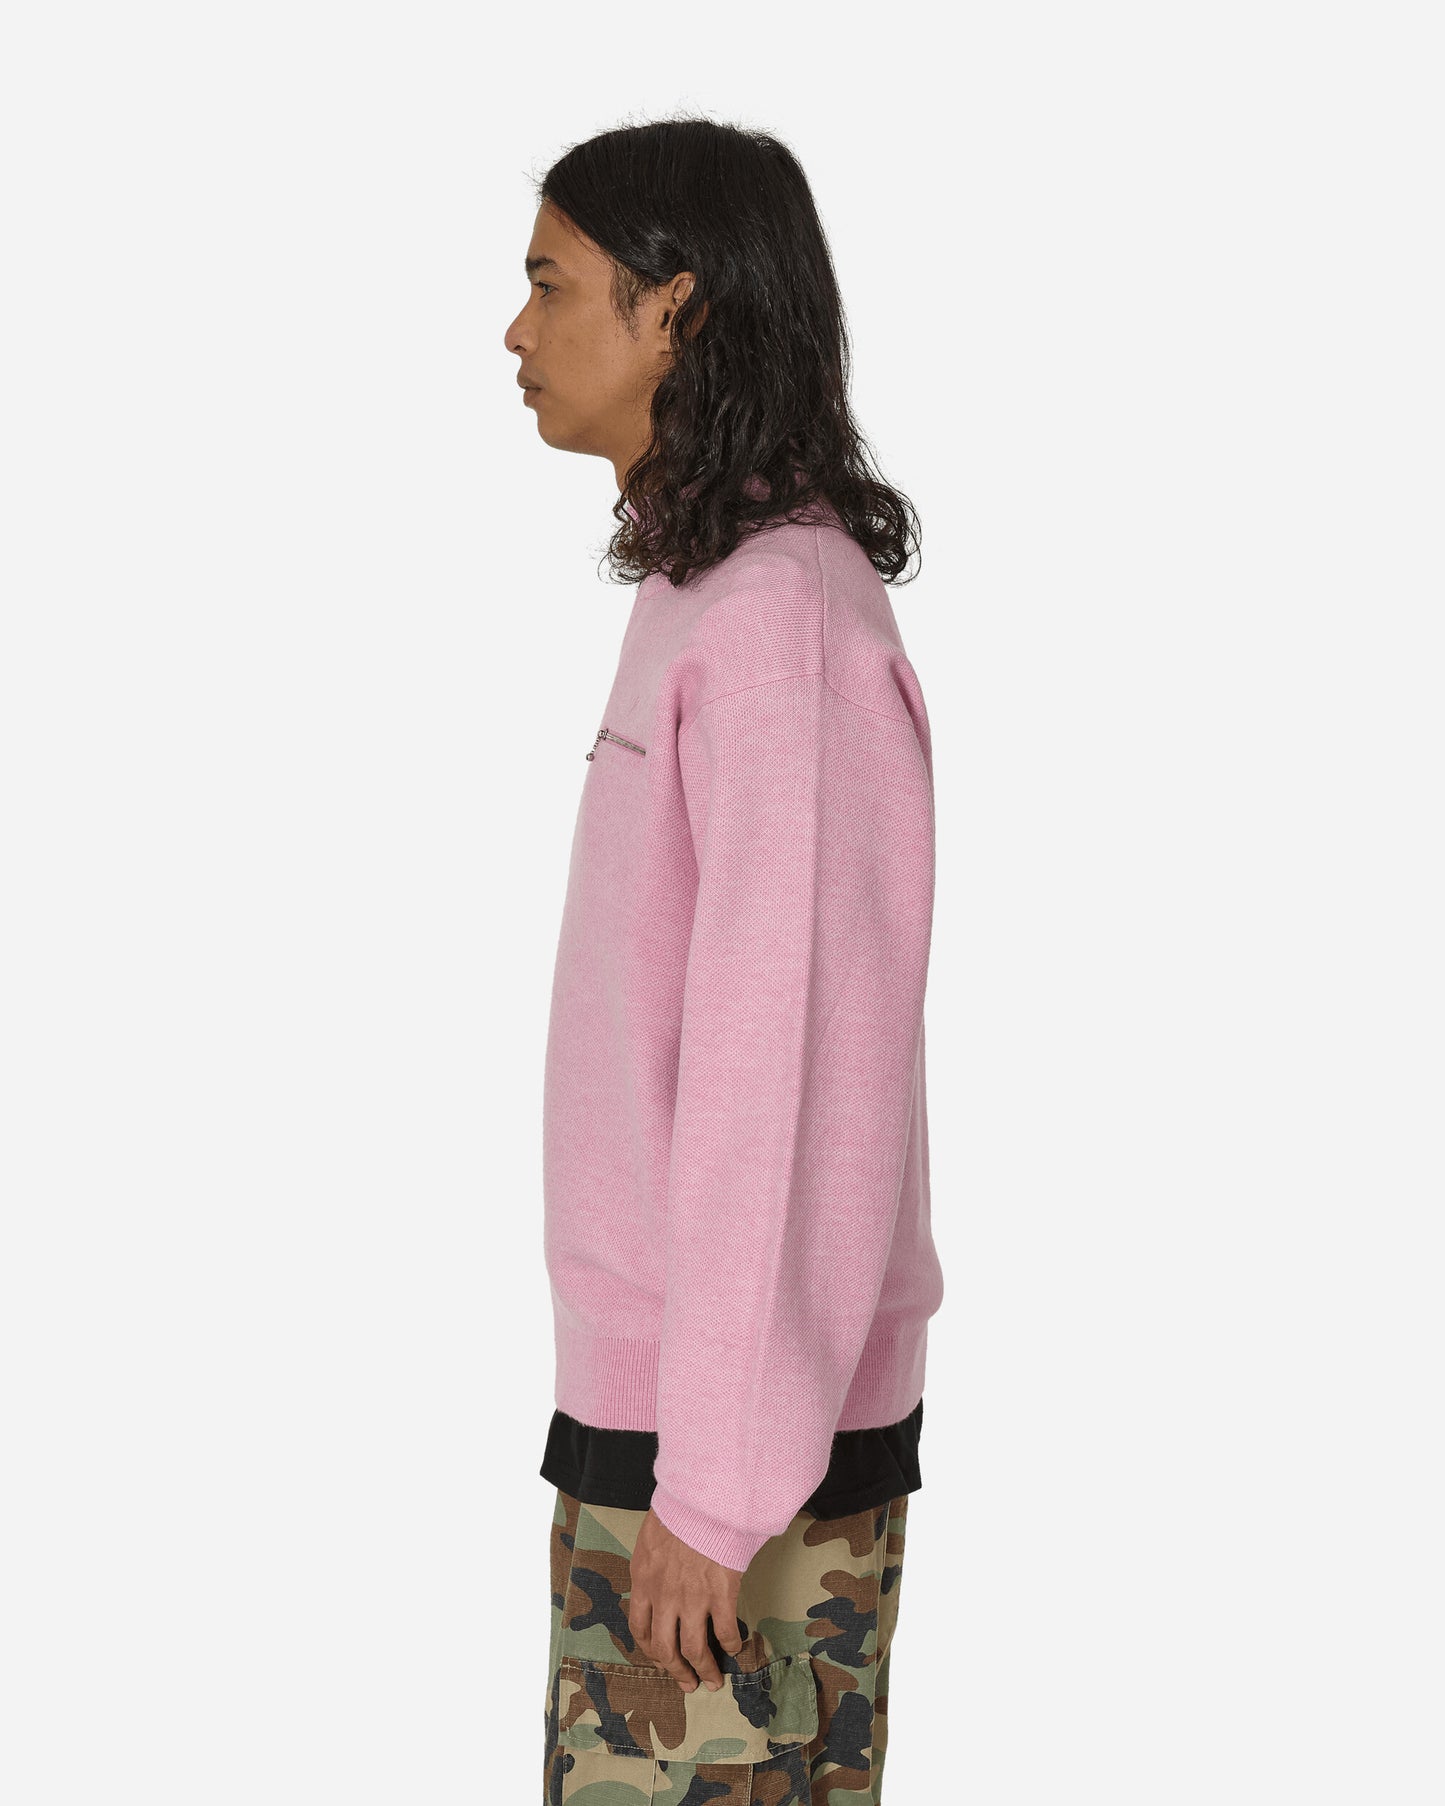 Stüssy Half Zip Mock Neck Sweater Pink Sweatshirts Zip-Ups 117219 0604